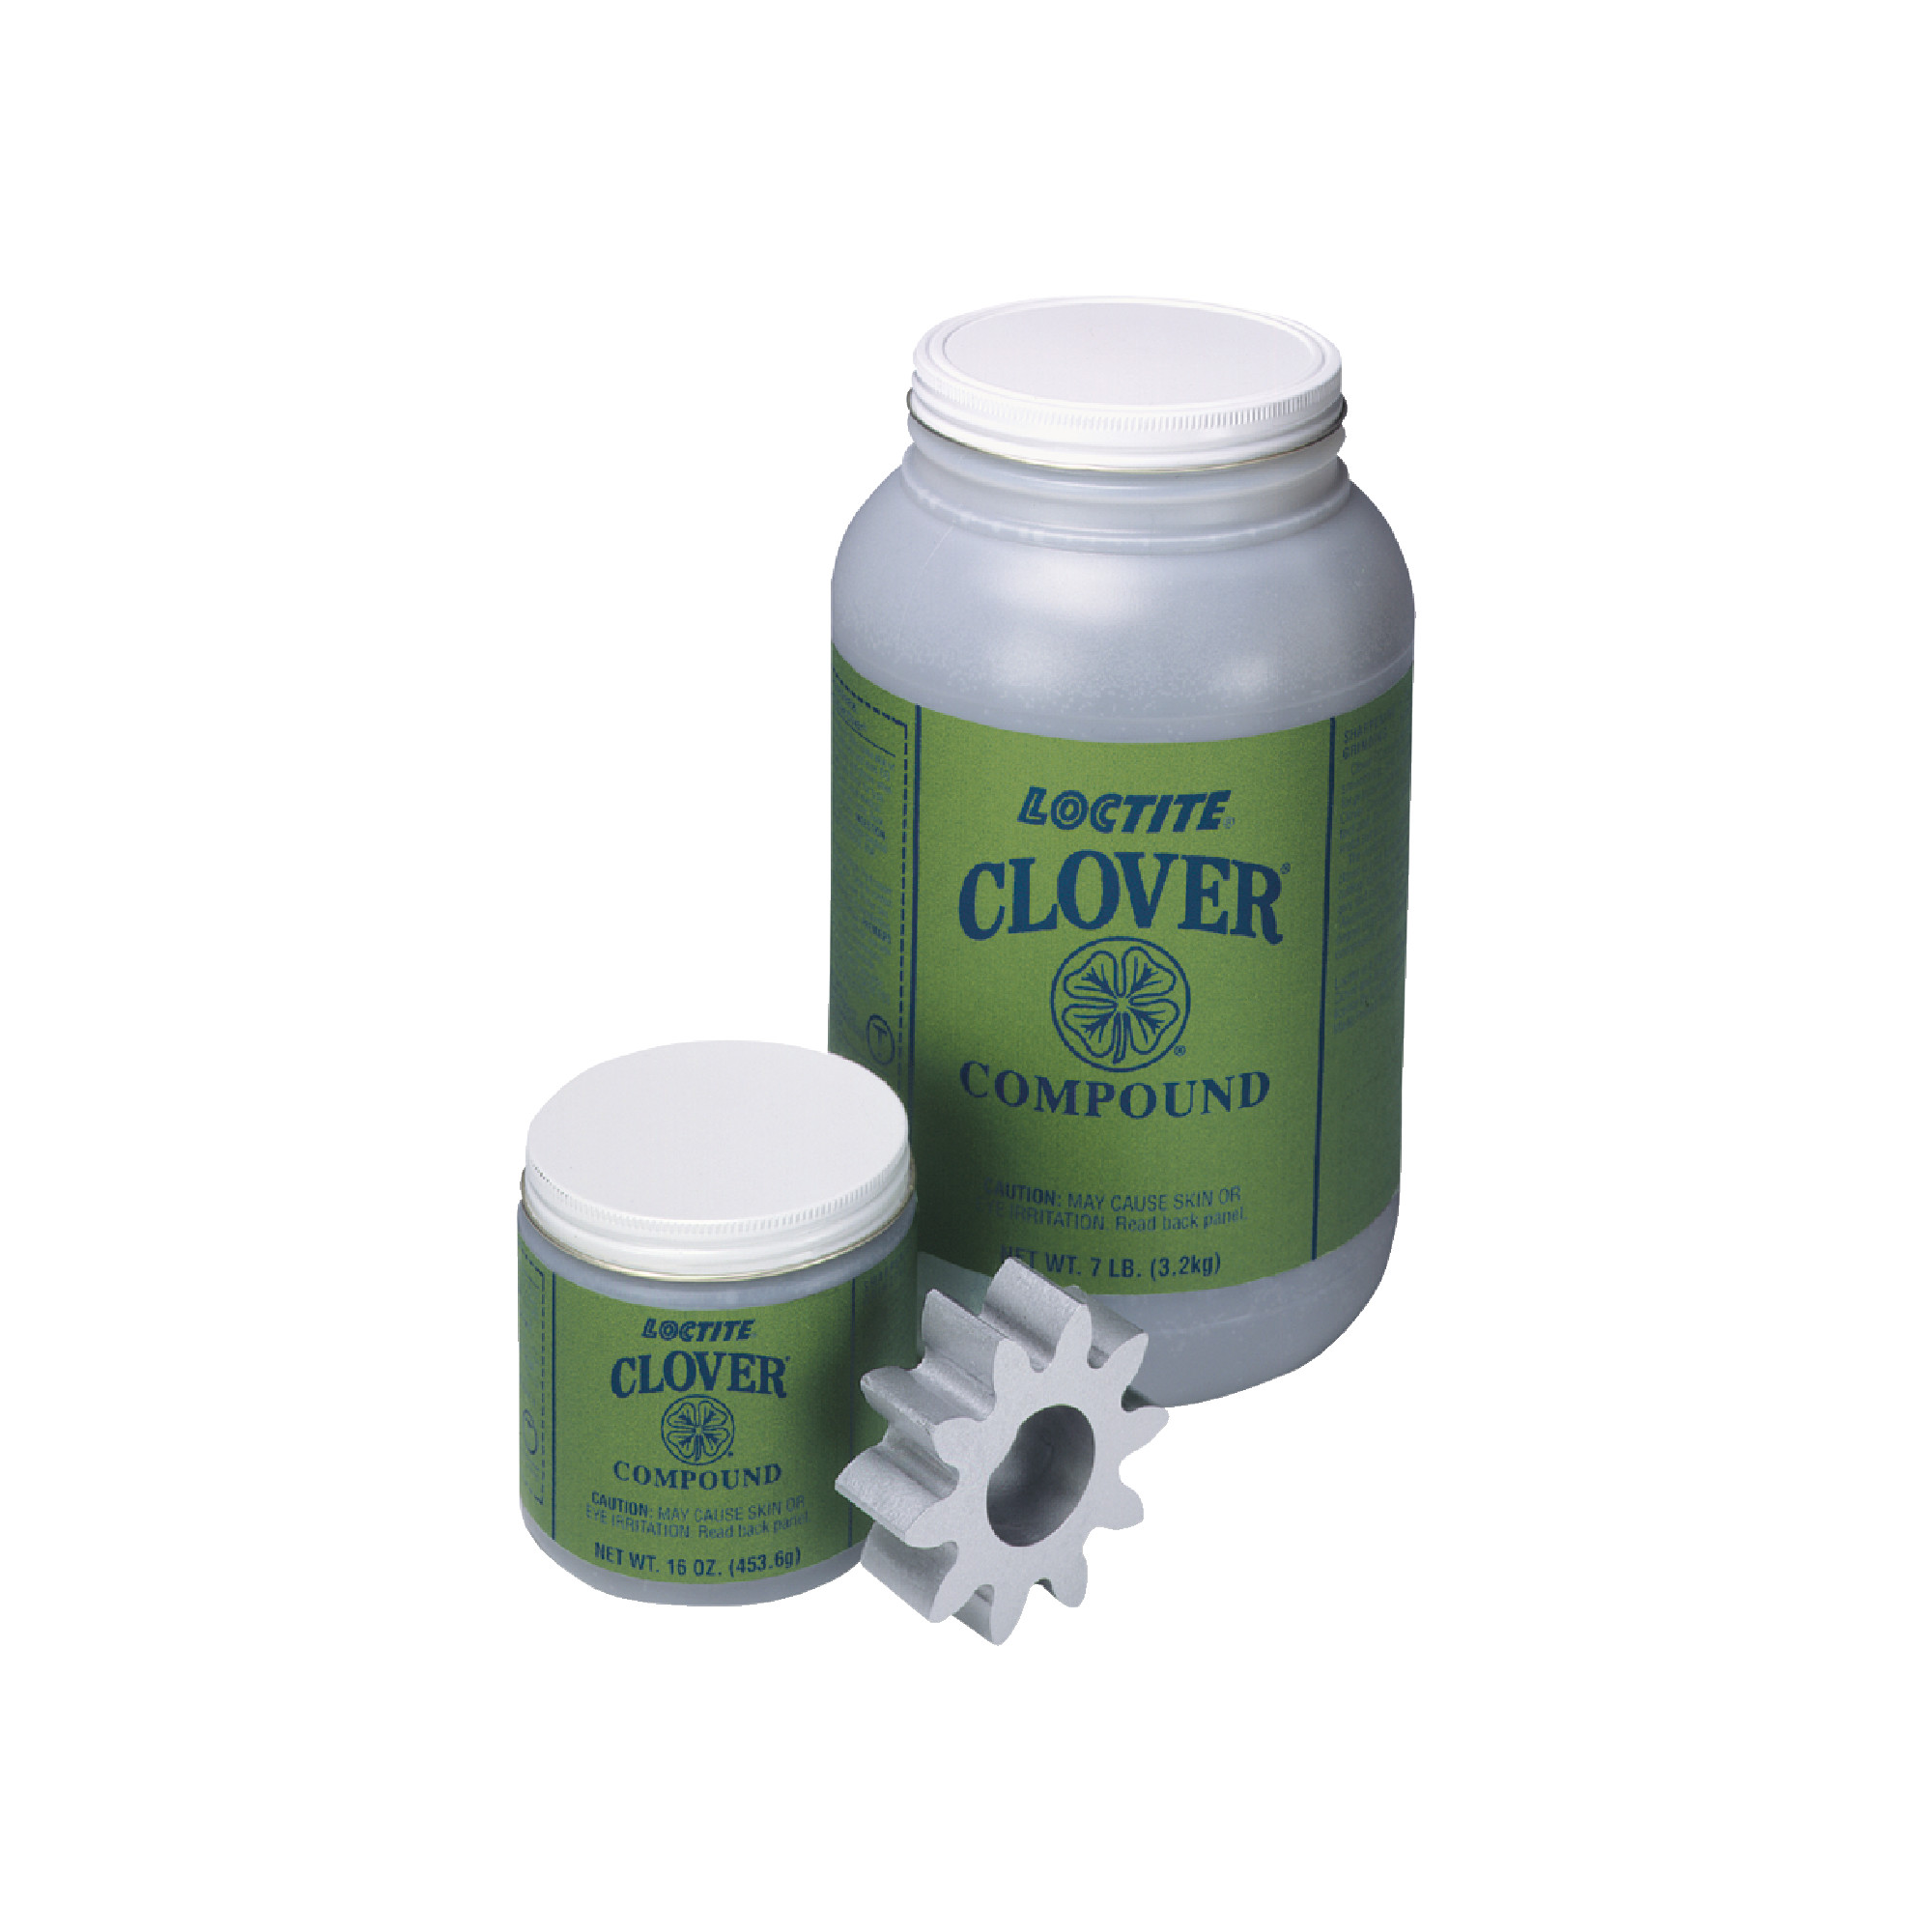 Clover&#174; Silicon Carbide Grease Mix